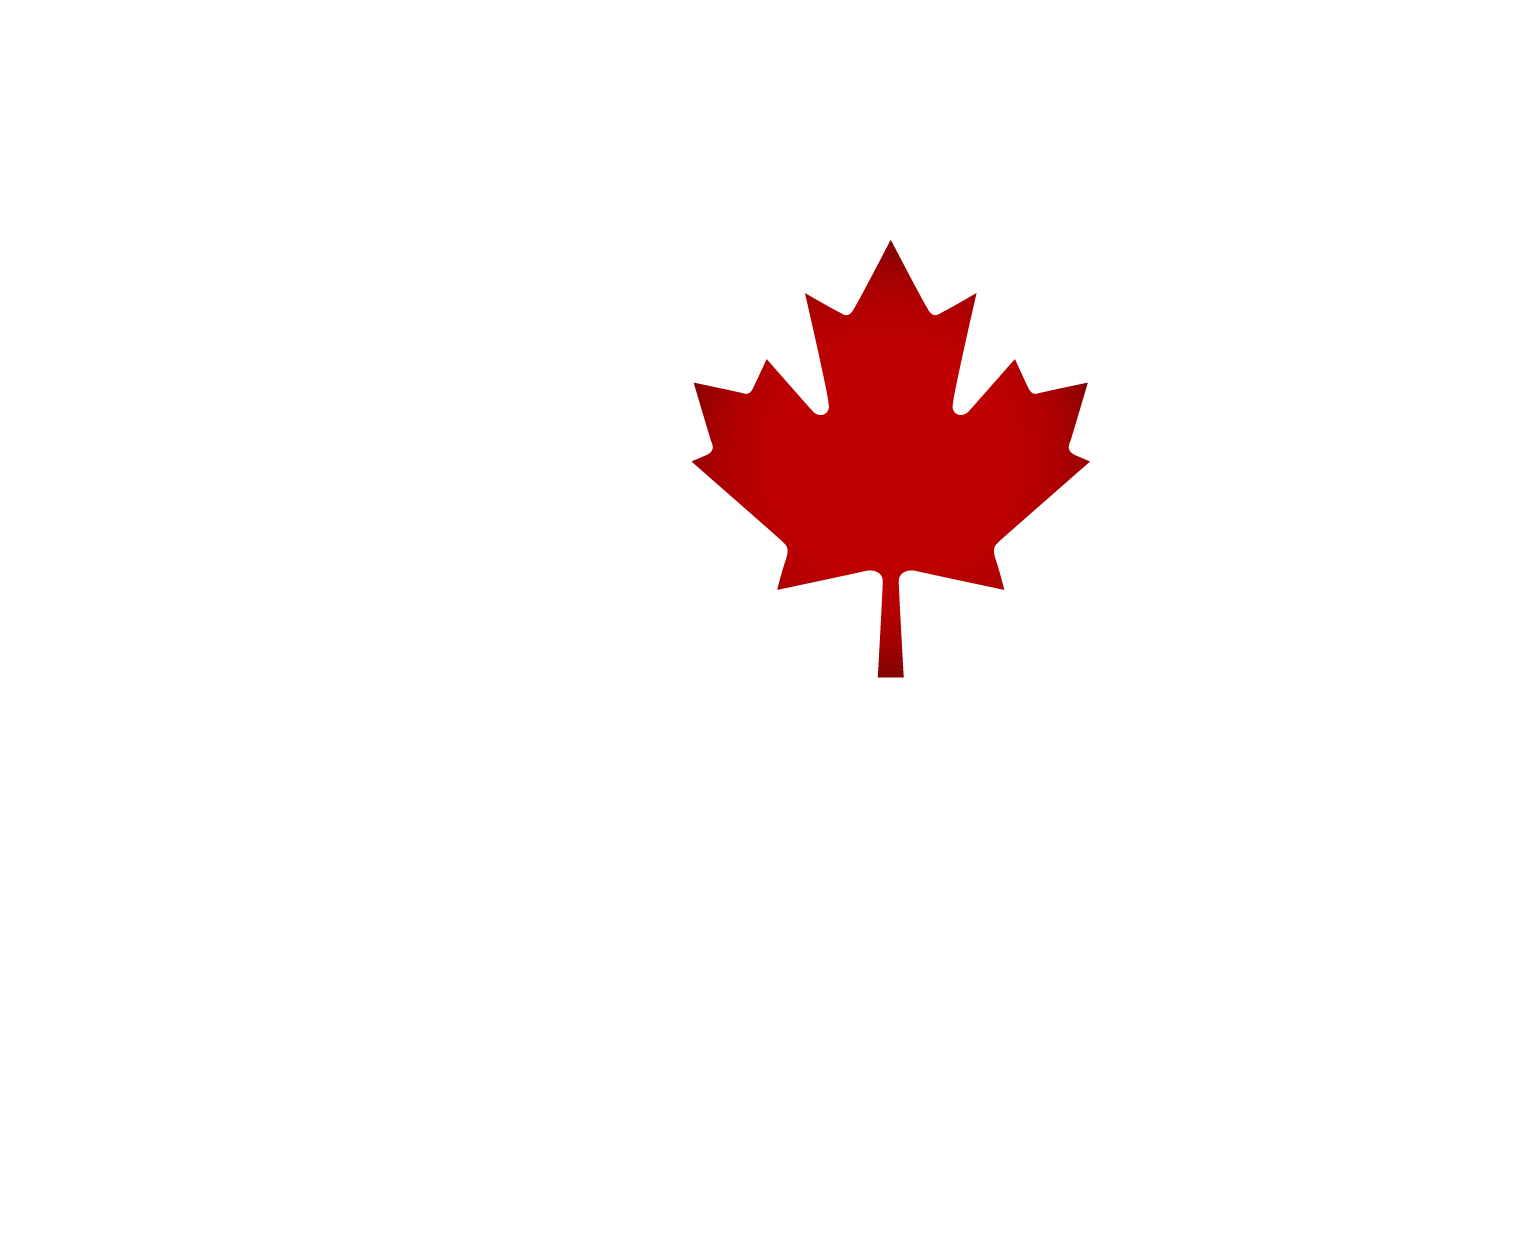 Bella Coola 2o18